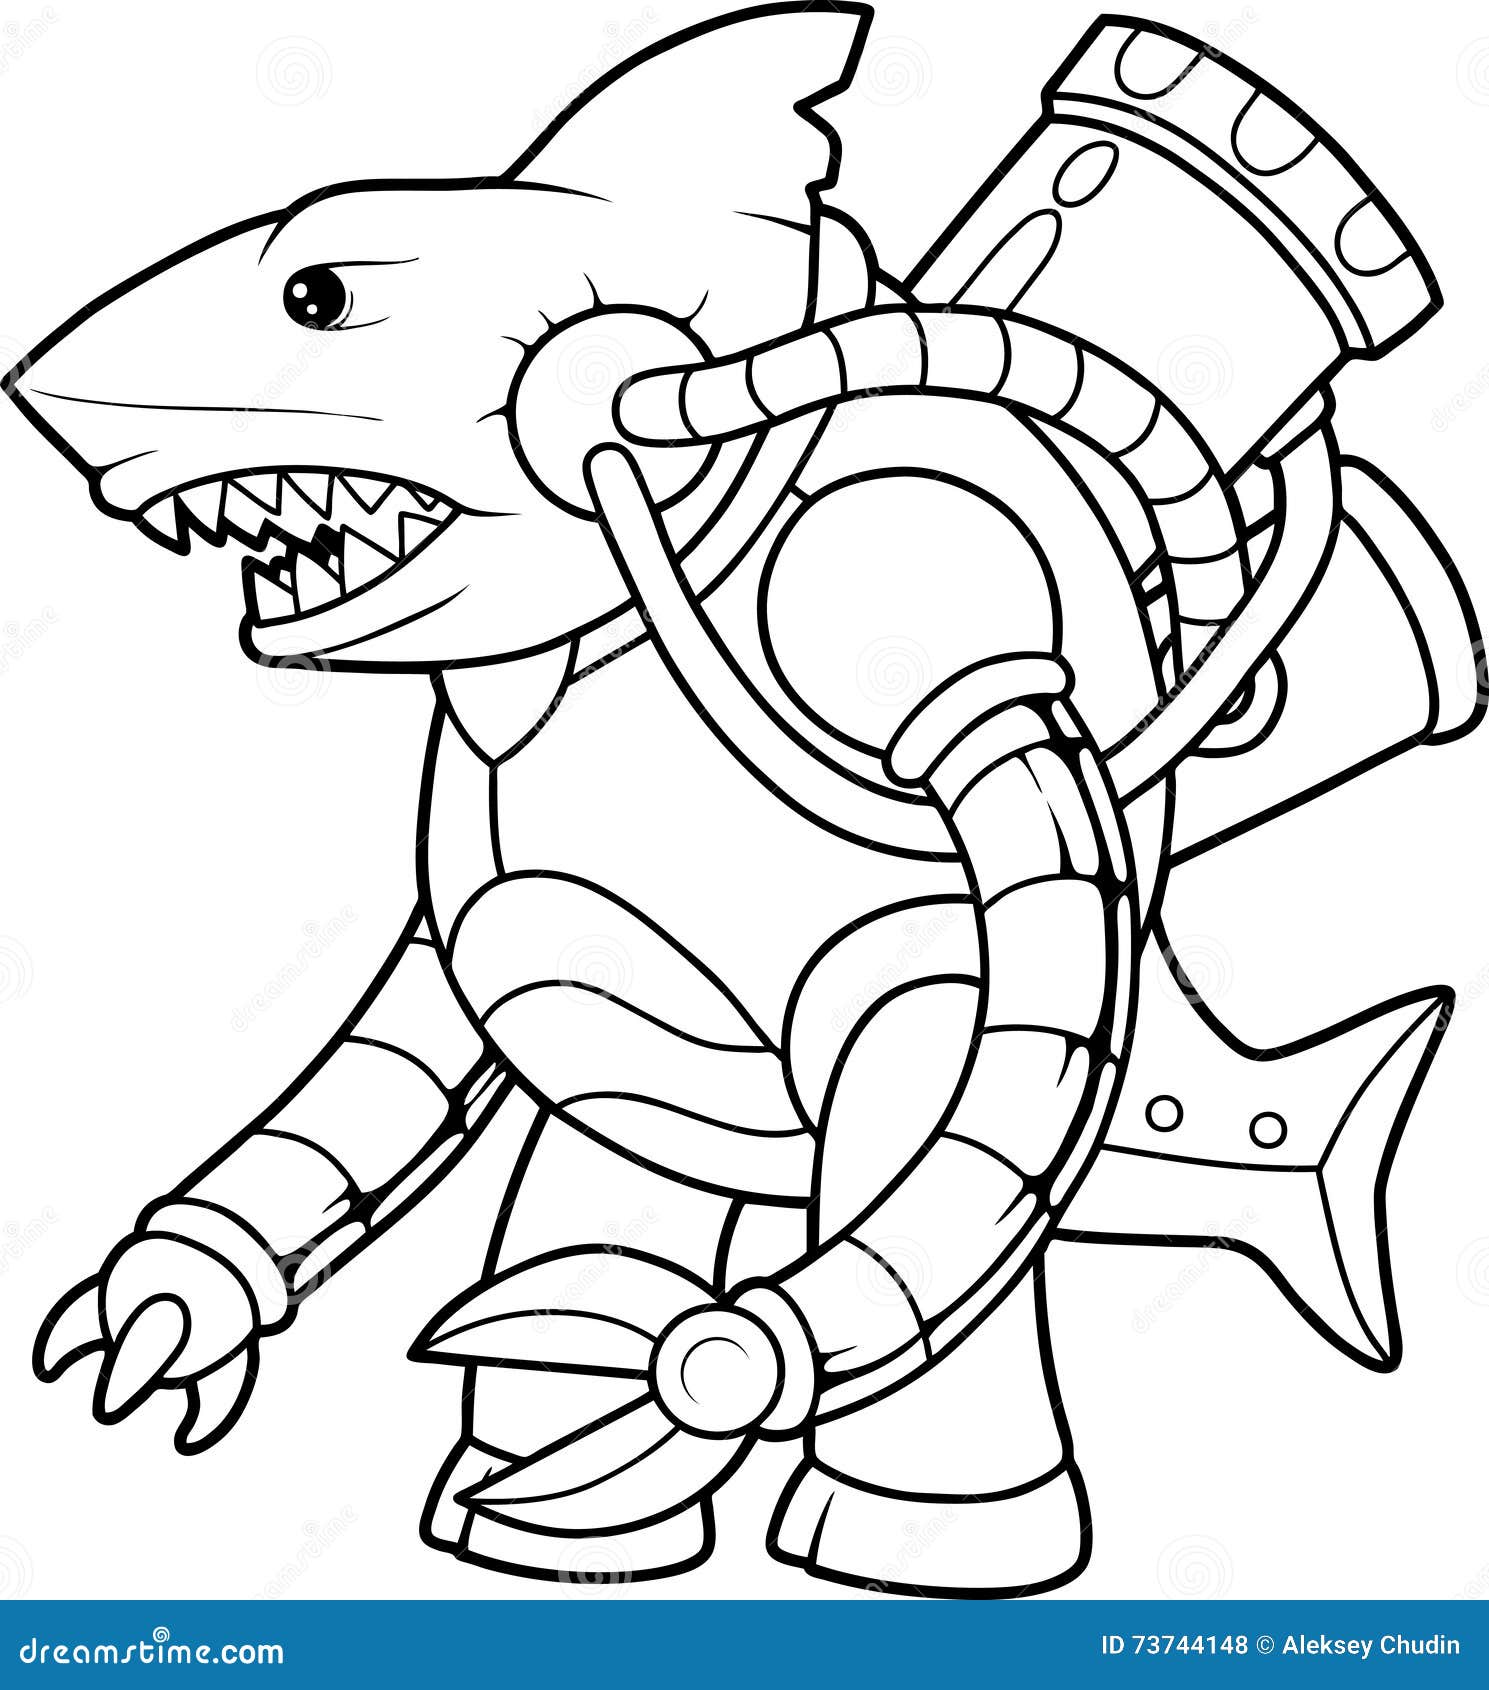 cybernetic alien shark